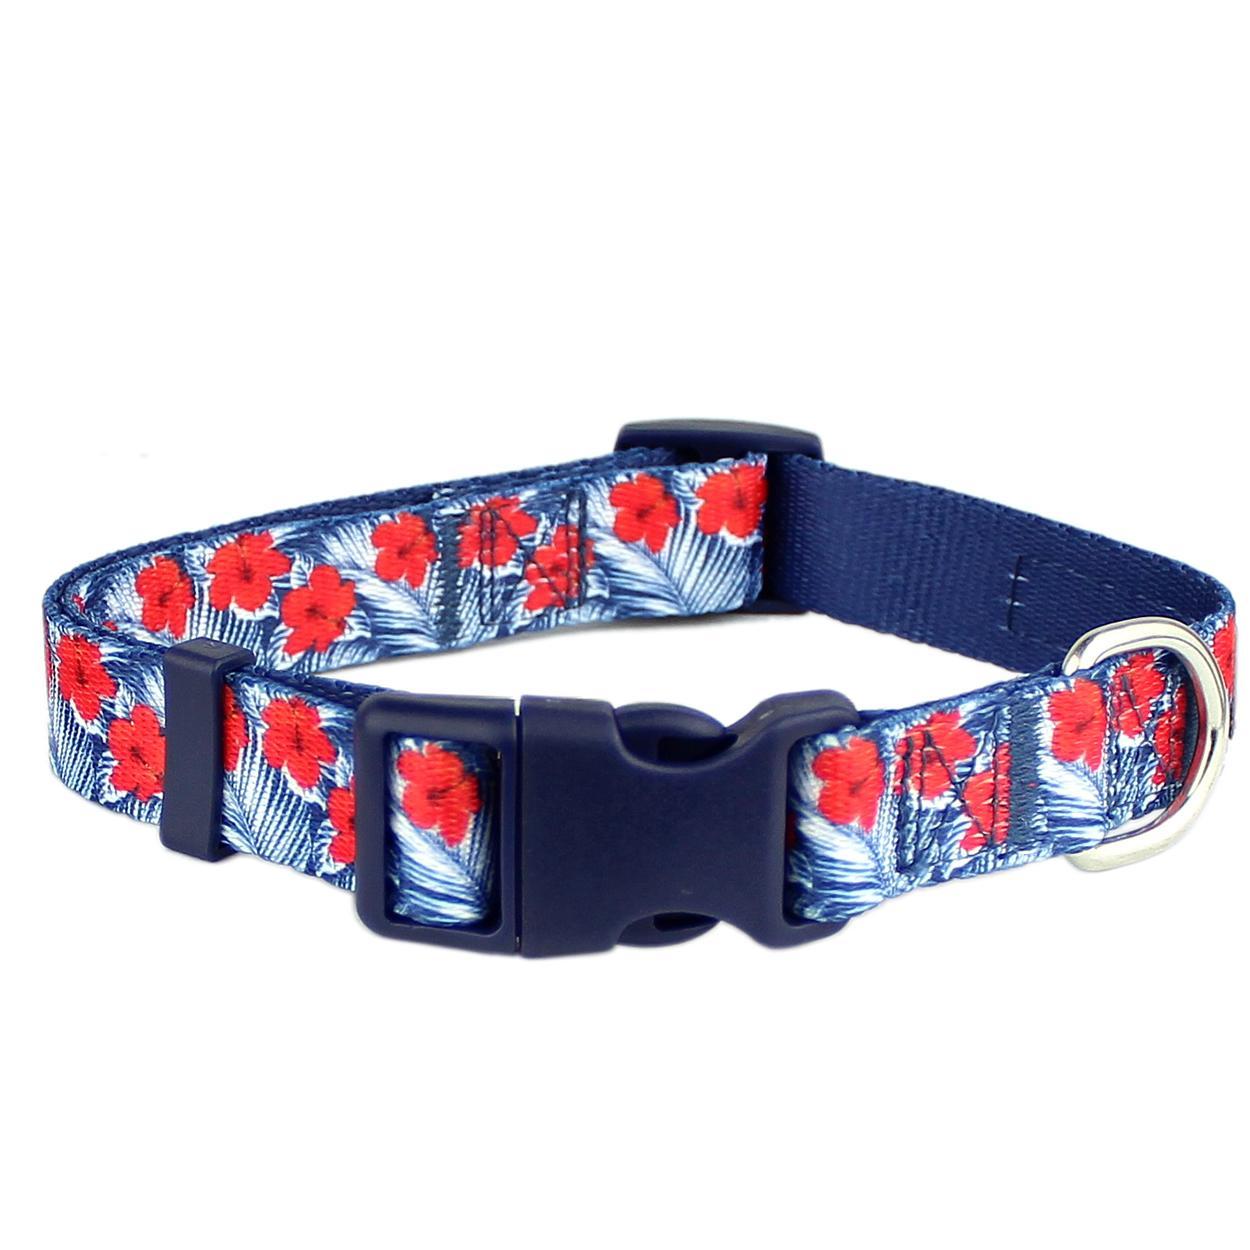 Hibiscus Blue Dog Collar by Parisian Pet